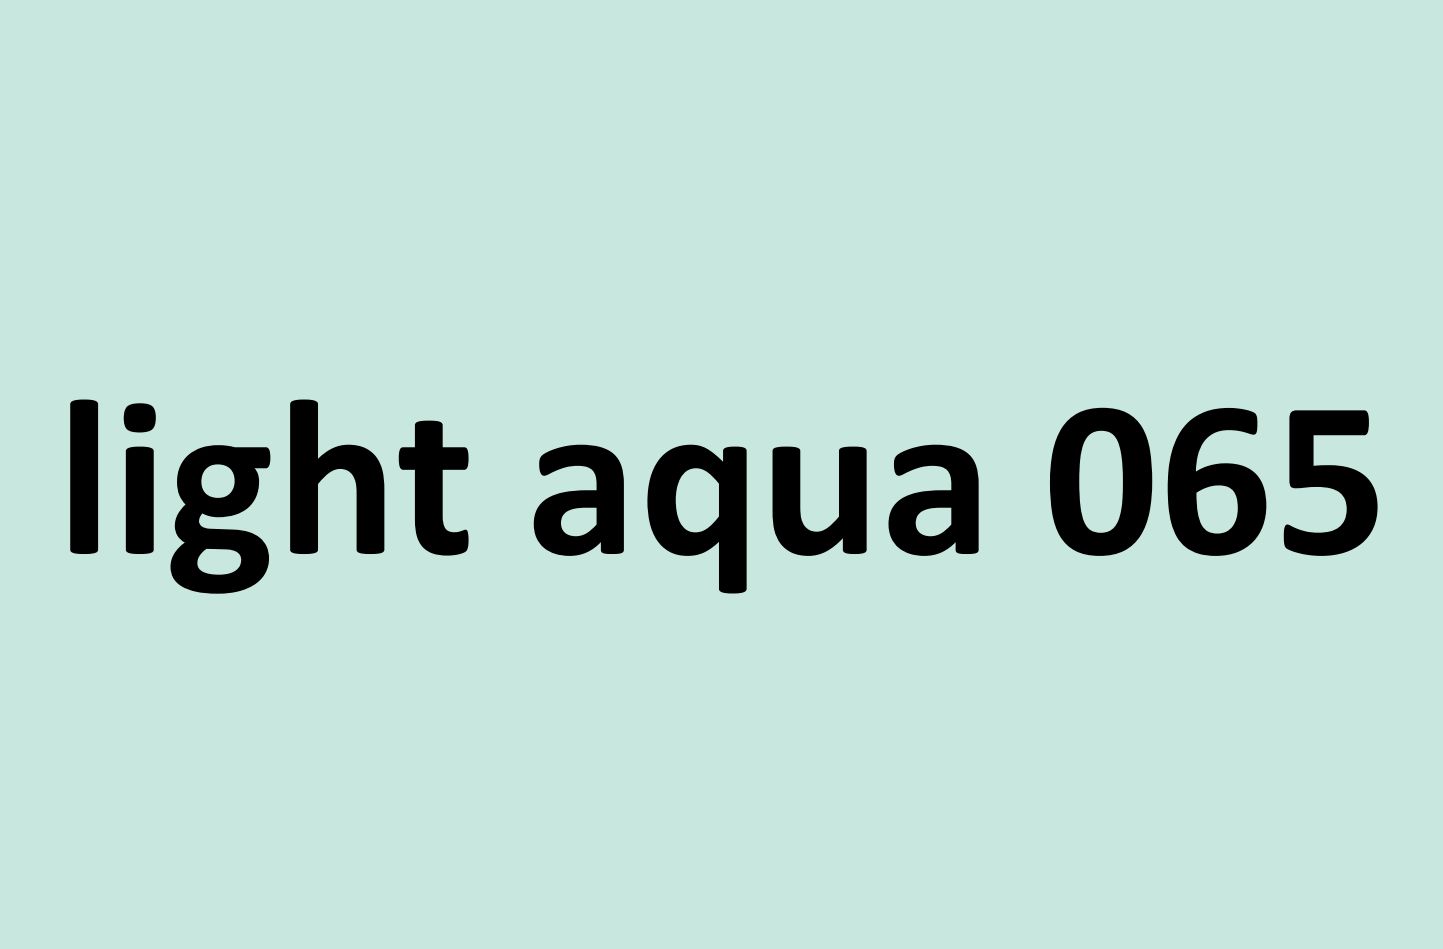 light aqua 065